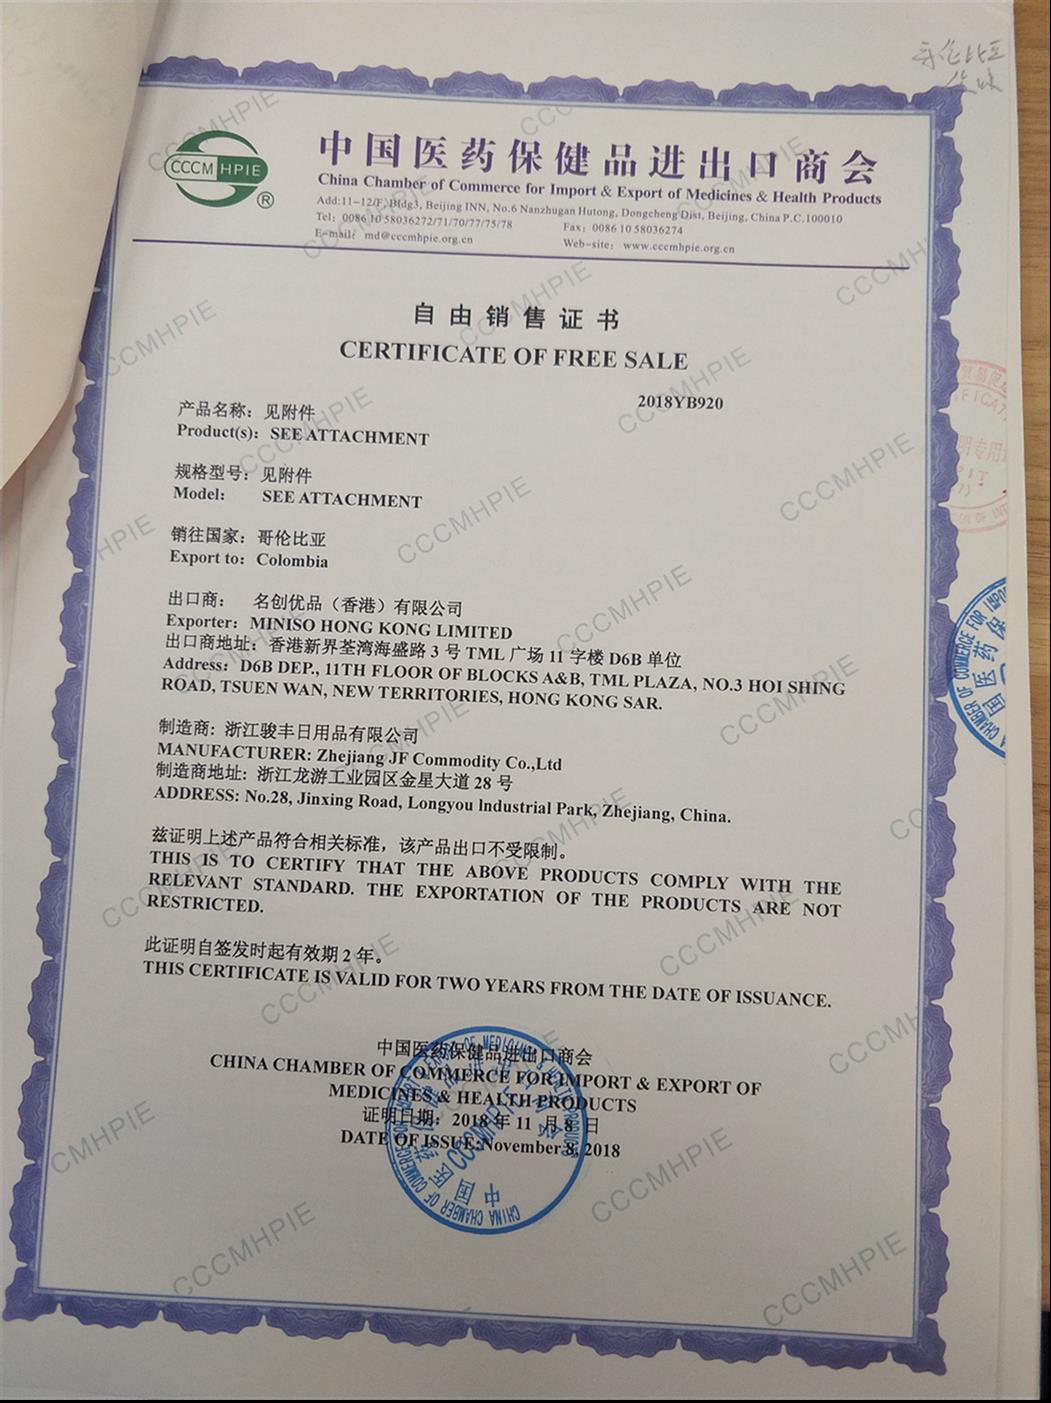 进口中国医药保健品商会自由销售证书